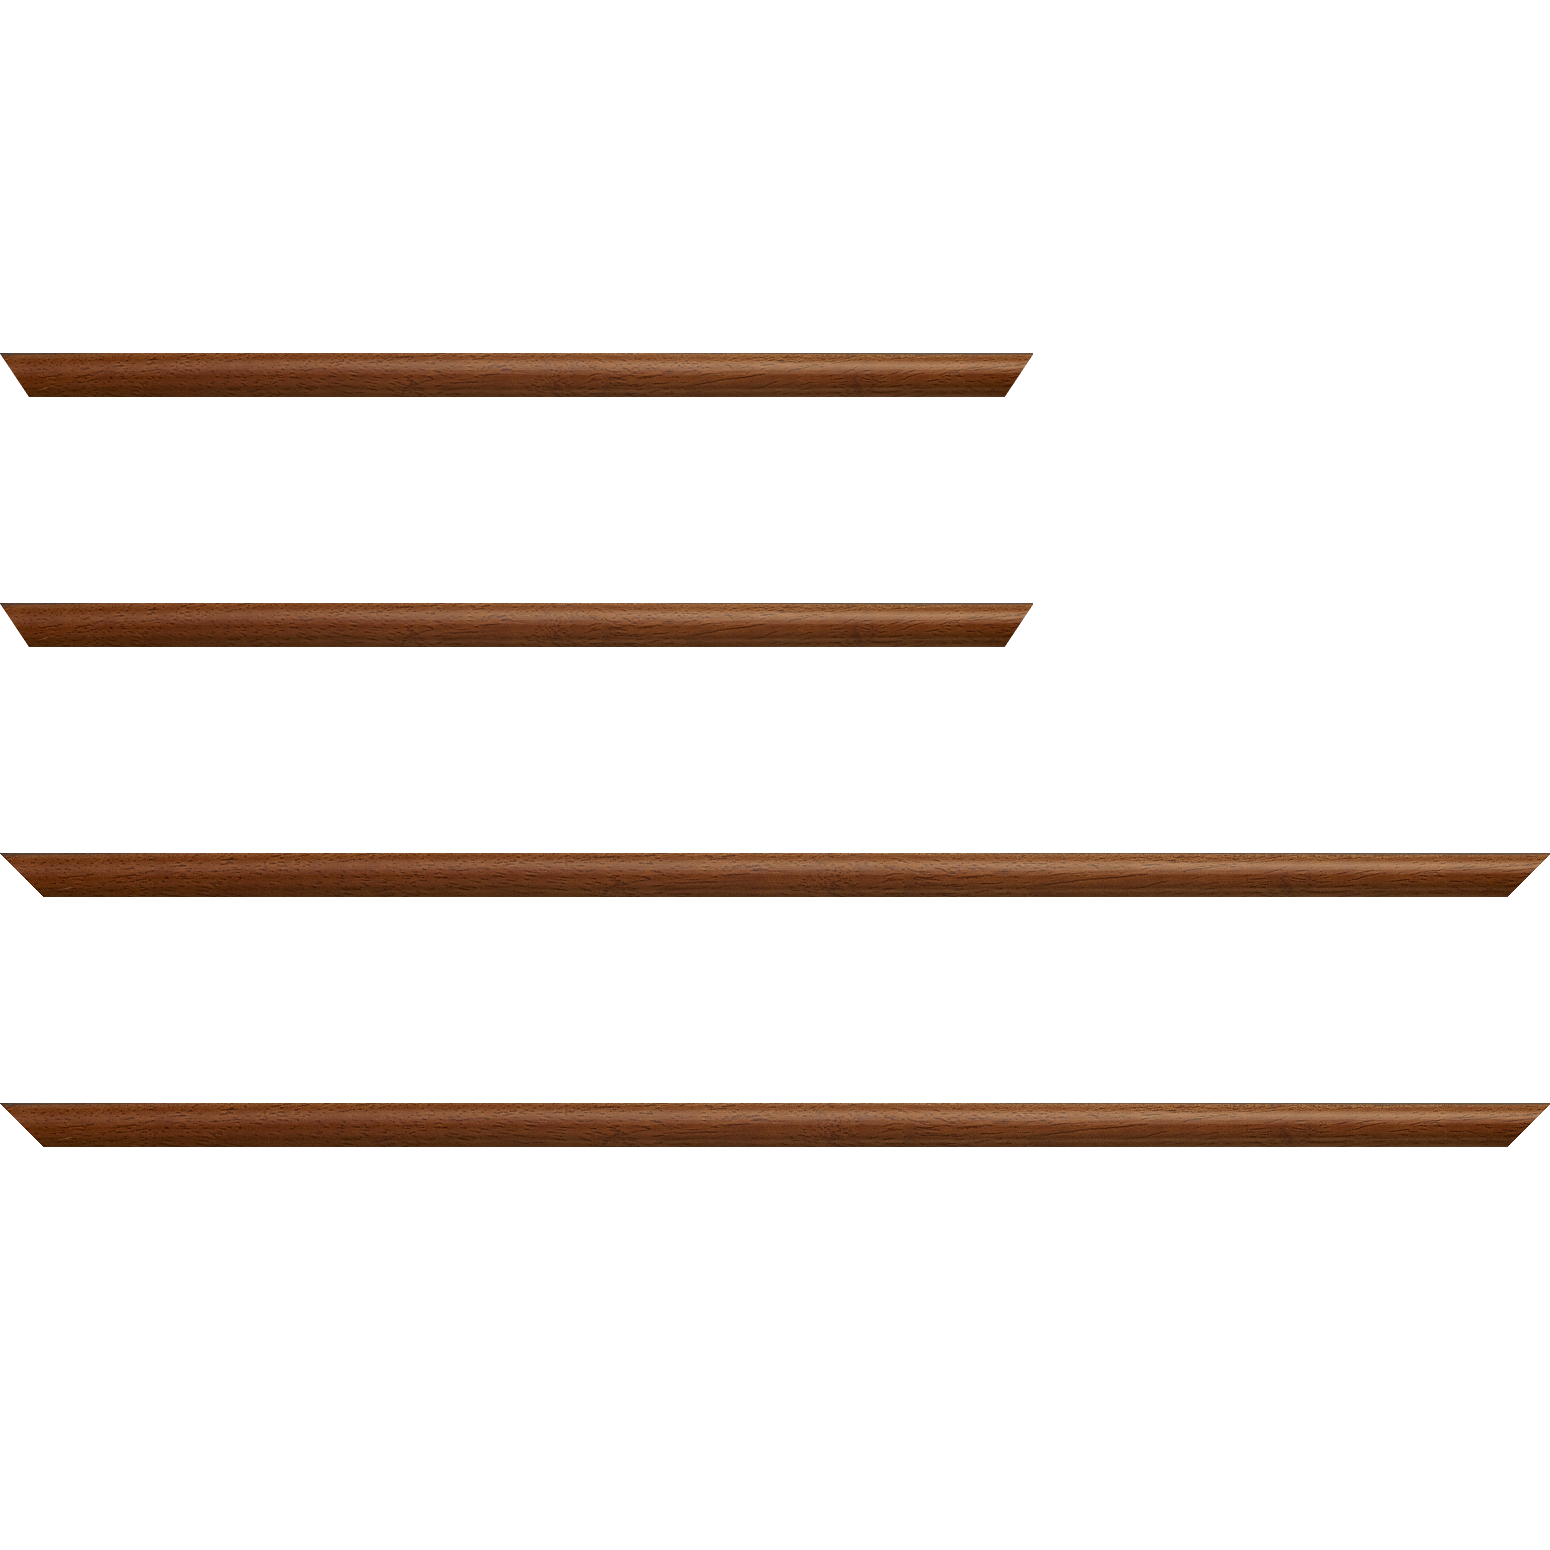 Baguette bois profil demi rond largeur 1.5cm couleur marron ton bois extérieur ébène - 34x40